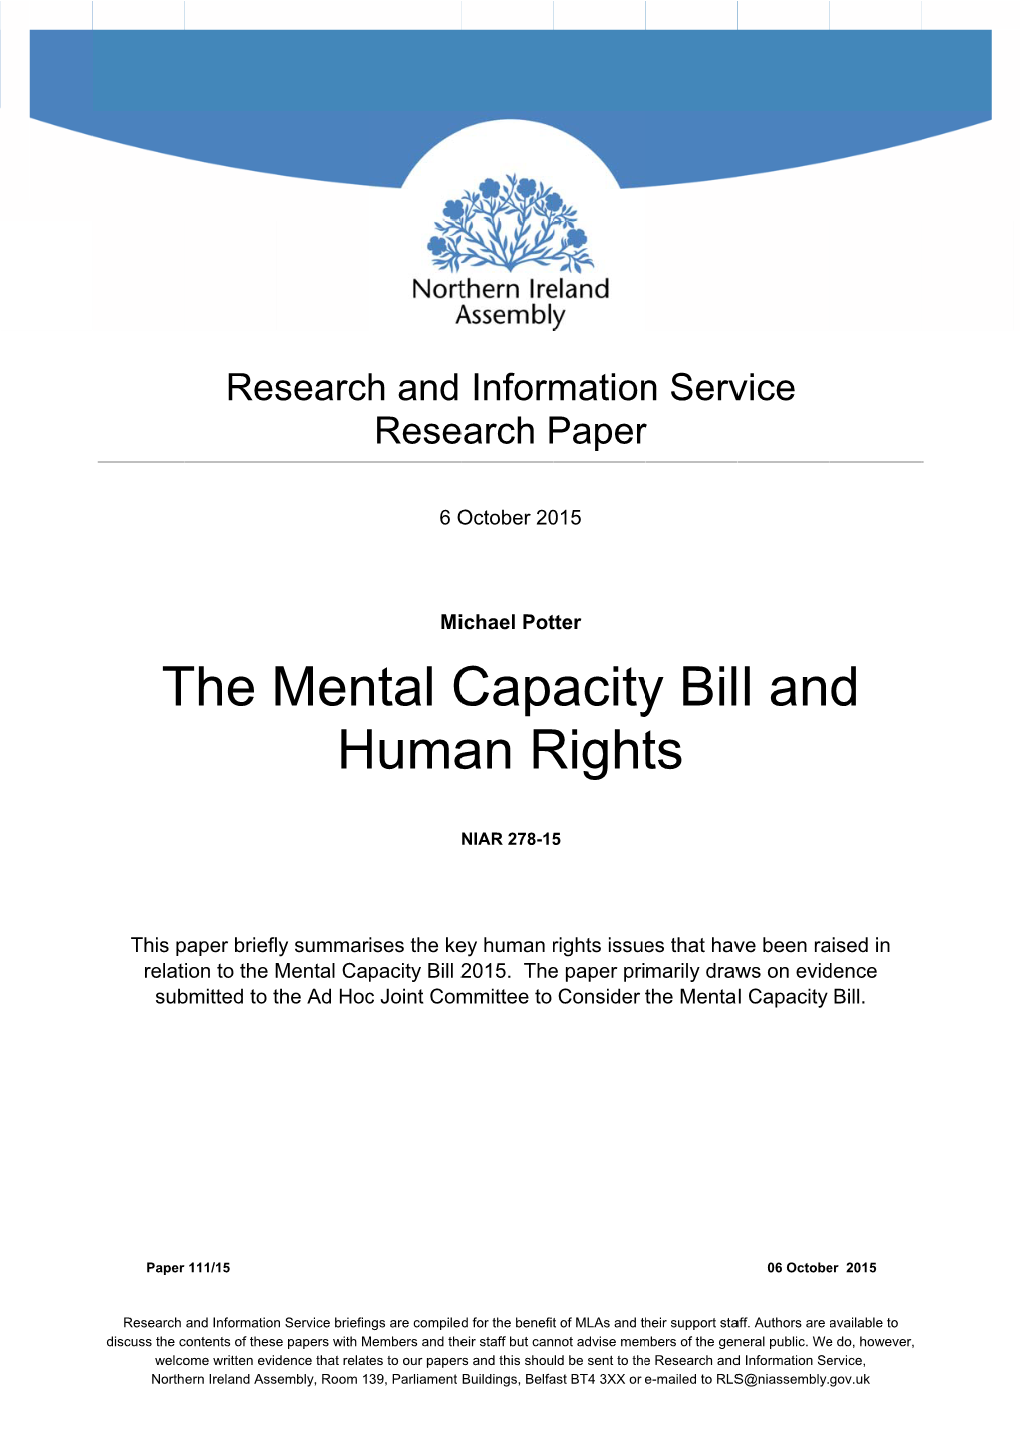 The Mental Capacity Bill and Human Rights